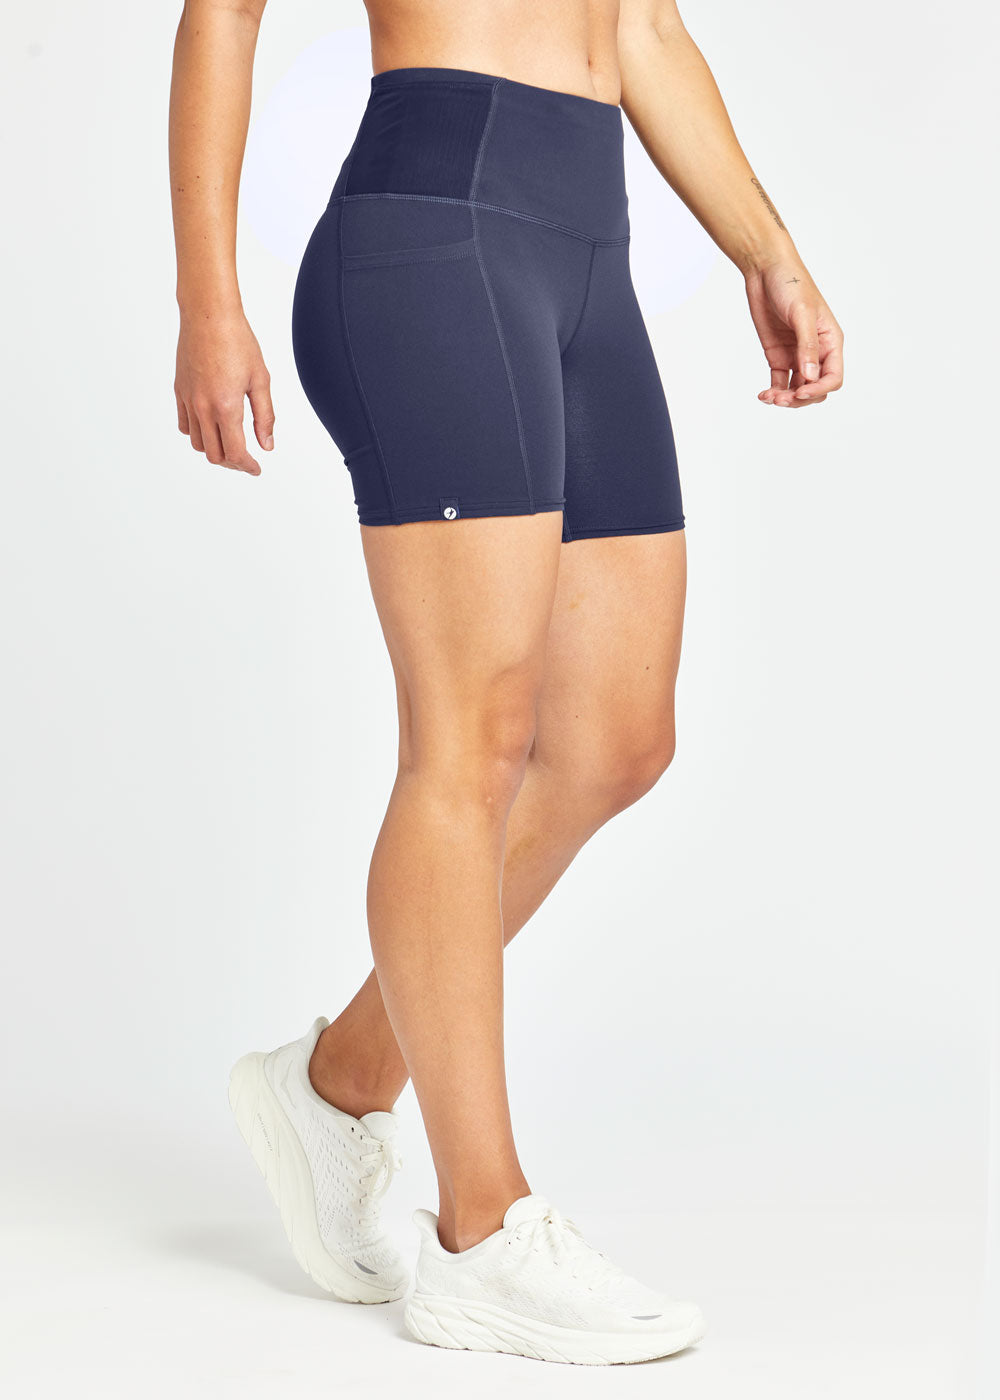 Lululemon Womens Size 12 Activewear Shorts Blue